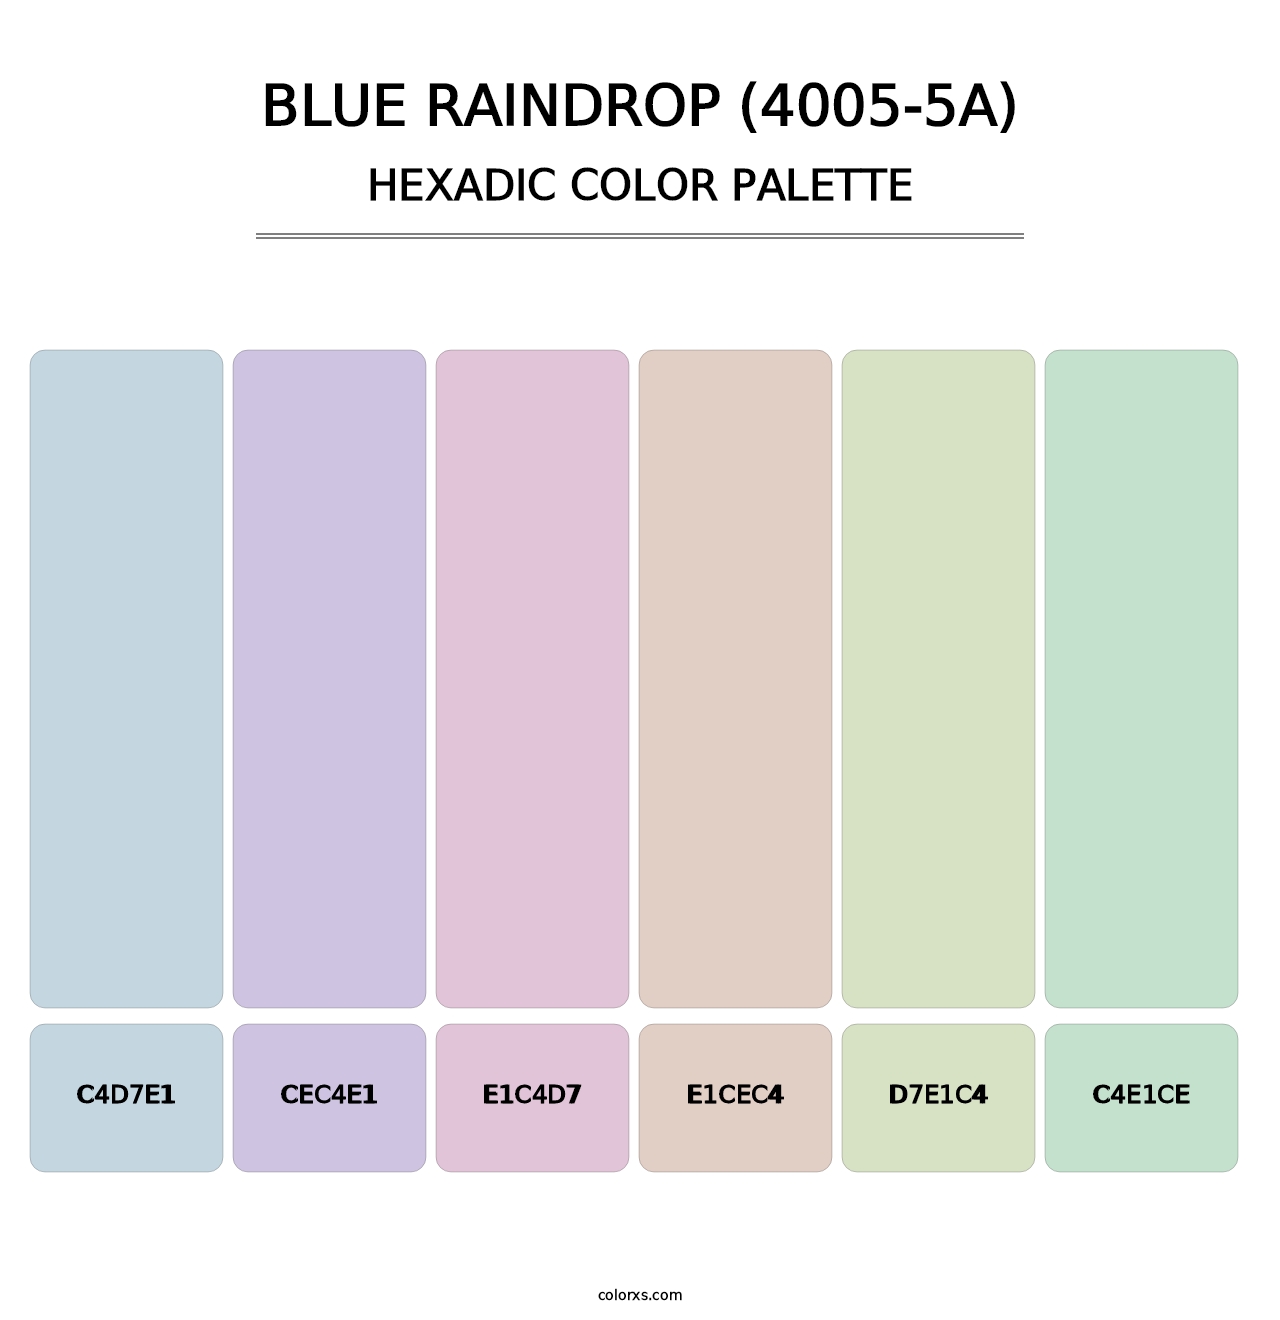 Blue Raindrop (4005-5A) - Hexadic Color Palette